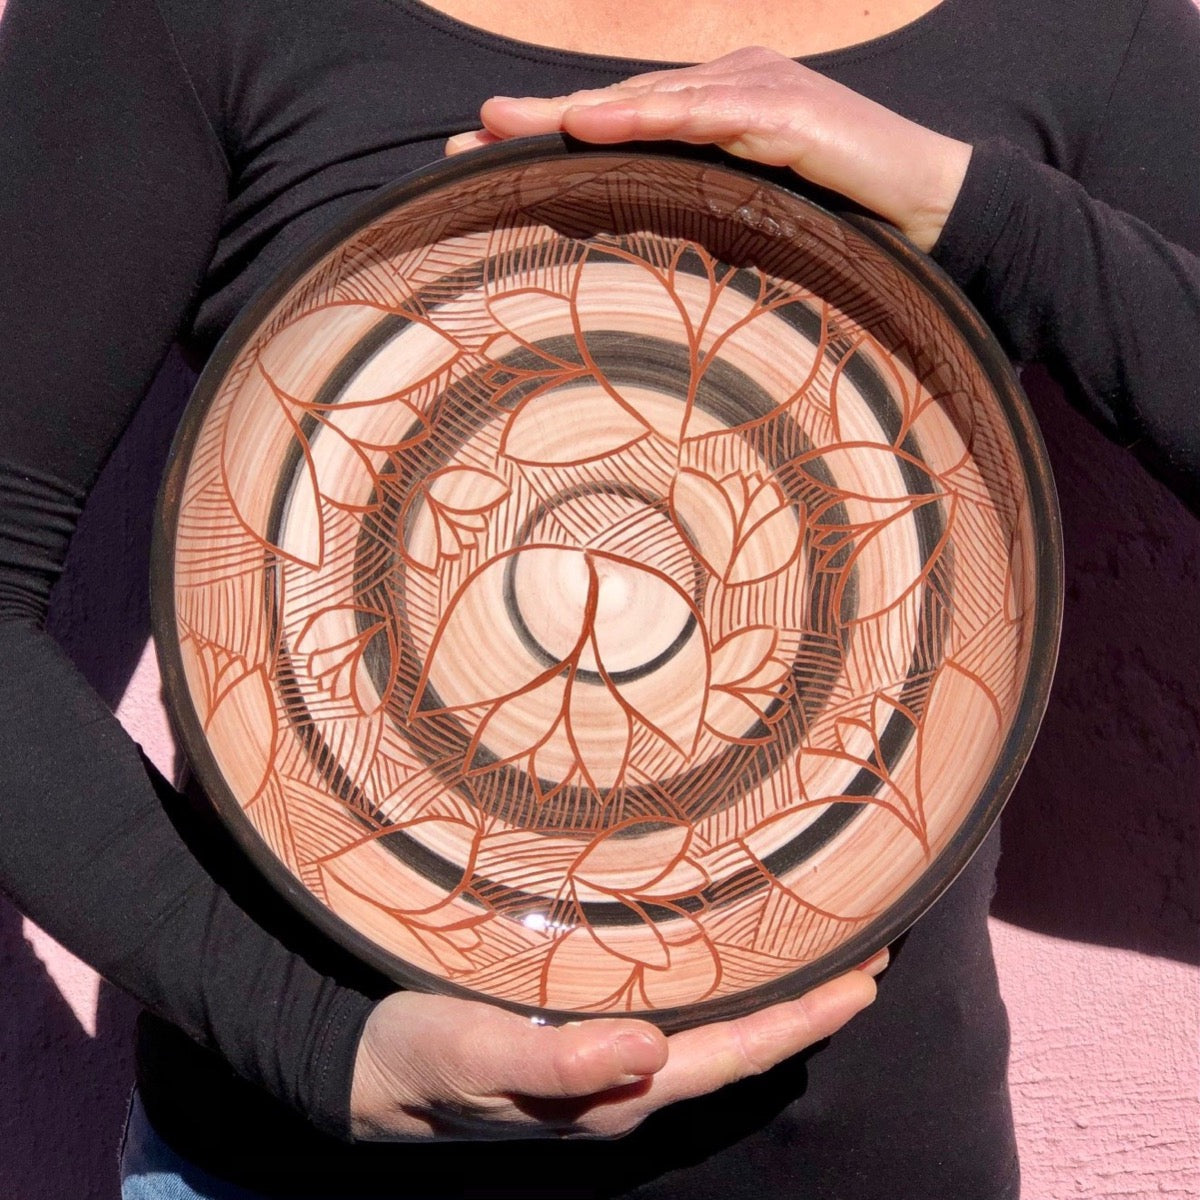 plat en poterie - pièce unique Les Poteries de Sylvie céramique artisanale